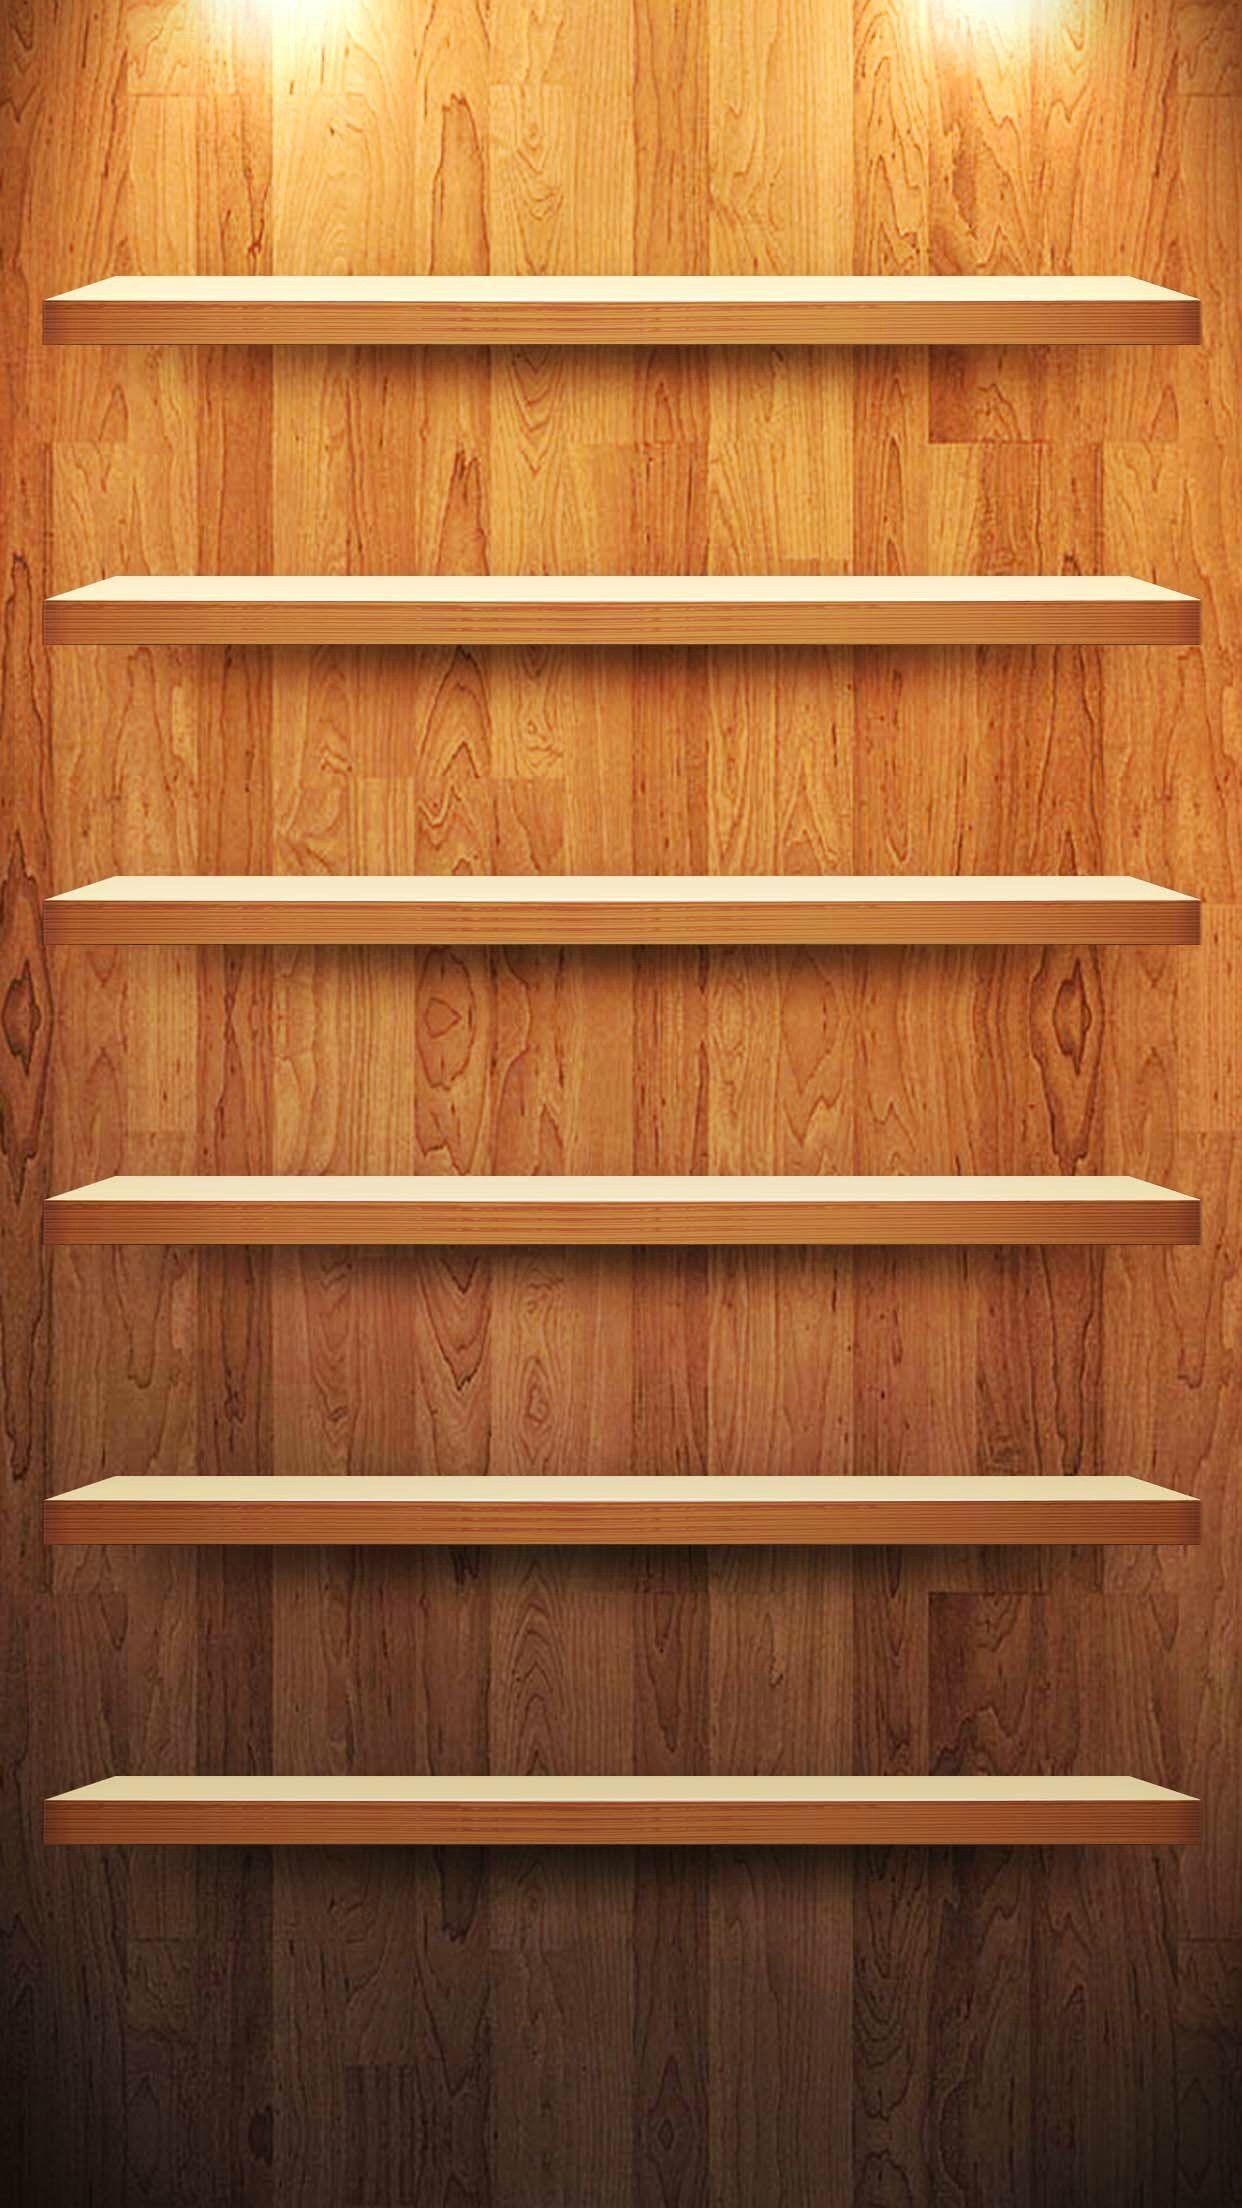 Bookshelves Wallpapers - Top Những Hình Ảnh Đẹp